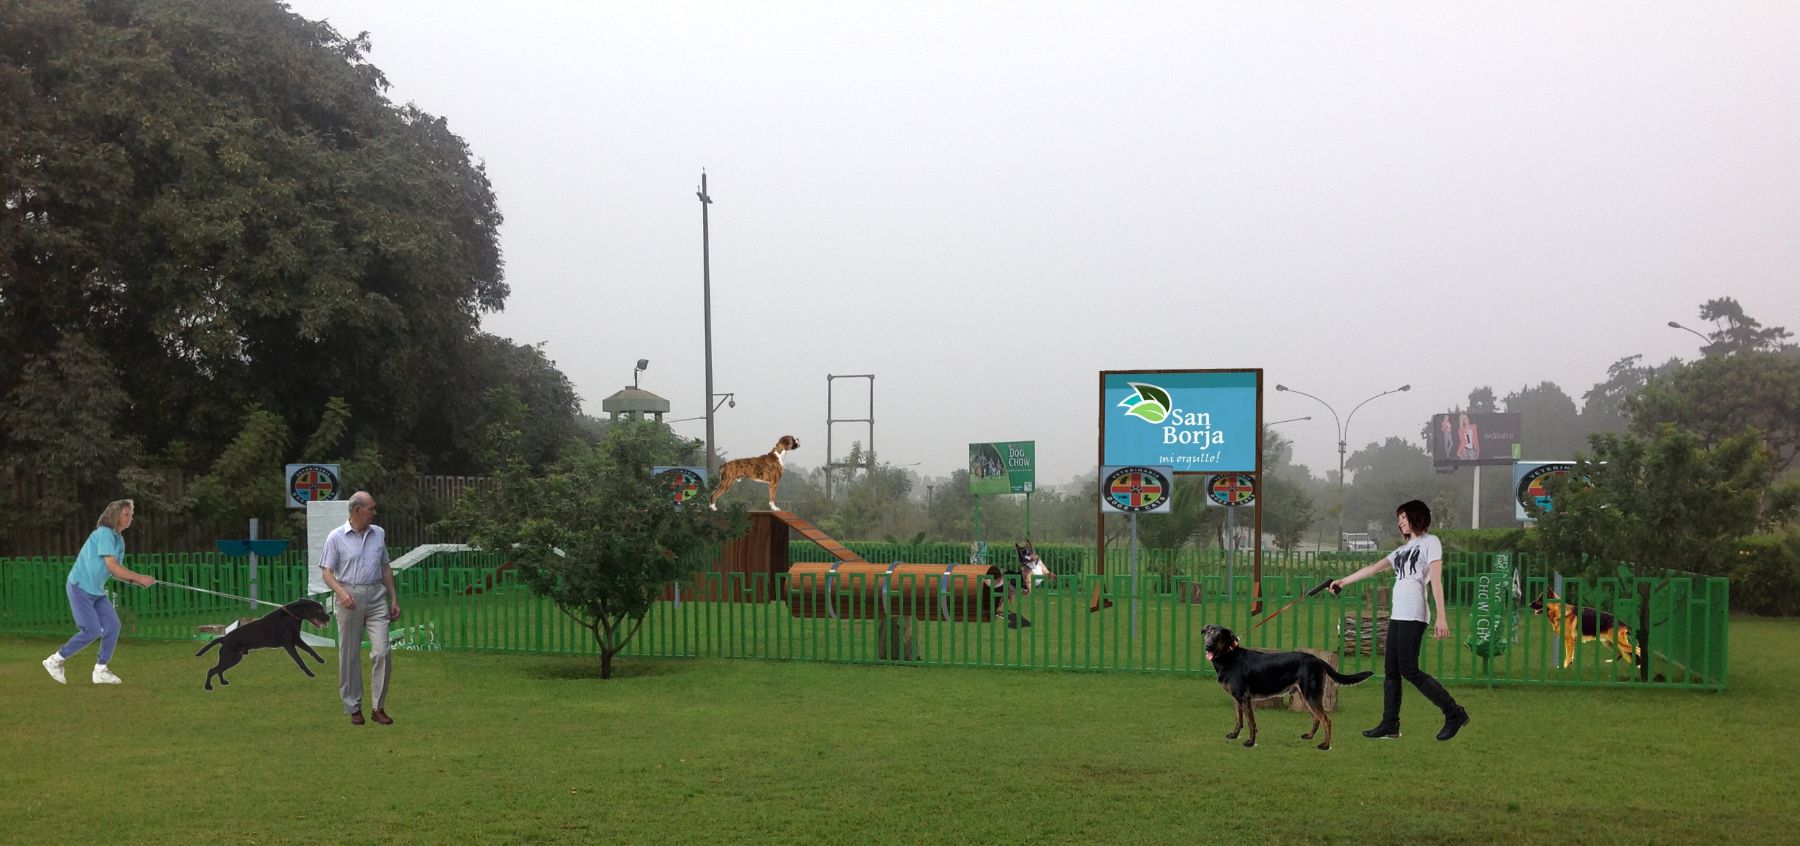 San Borja inaugura este domingo primer parque temático para perros, Noticias